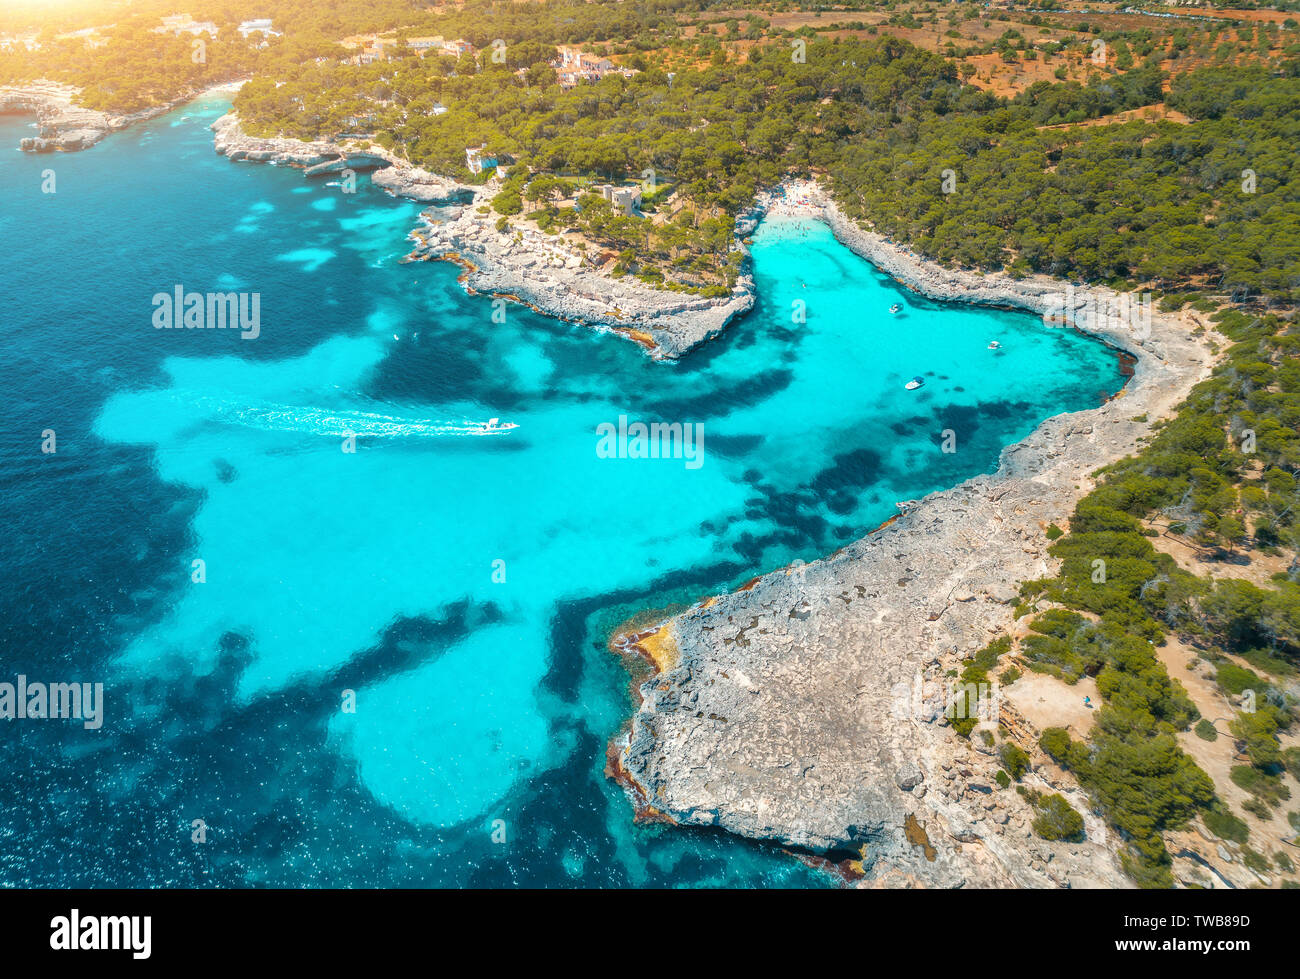 Vista aerea del mare con acqua blu, spiaggia sabbiosa, alberi verdi Foto Stock